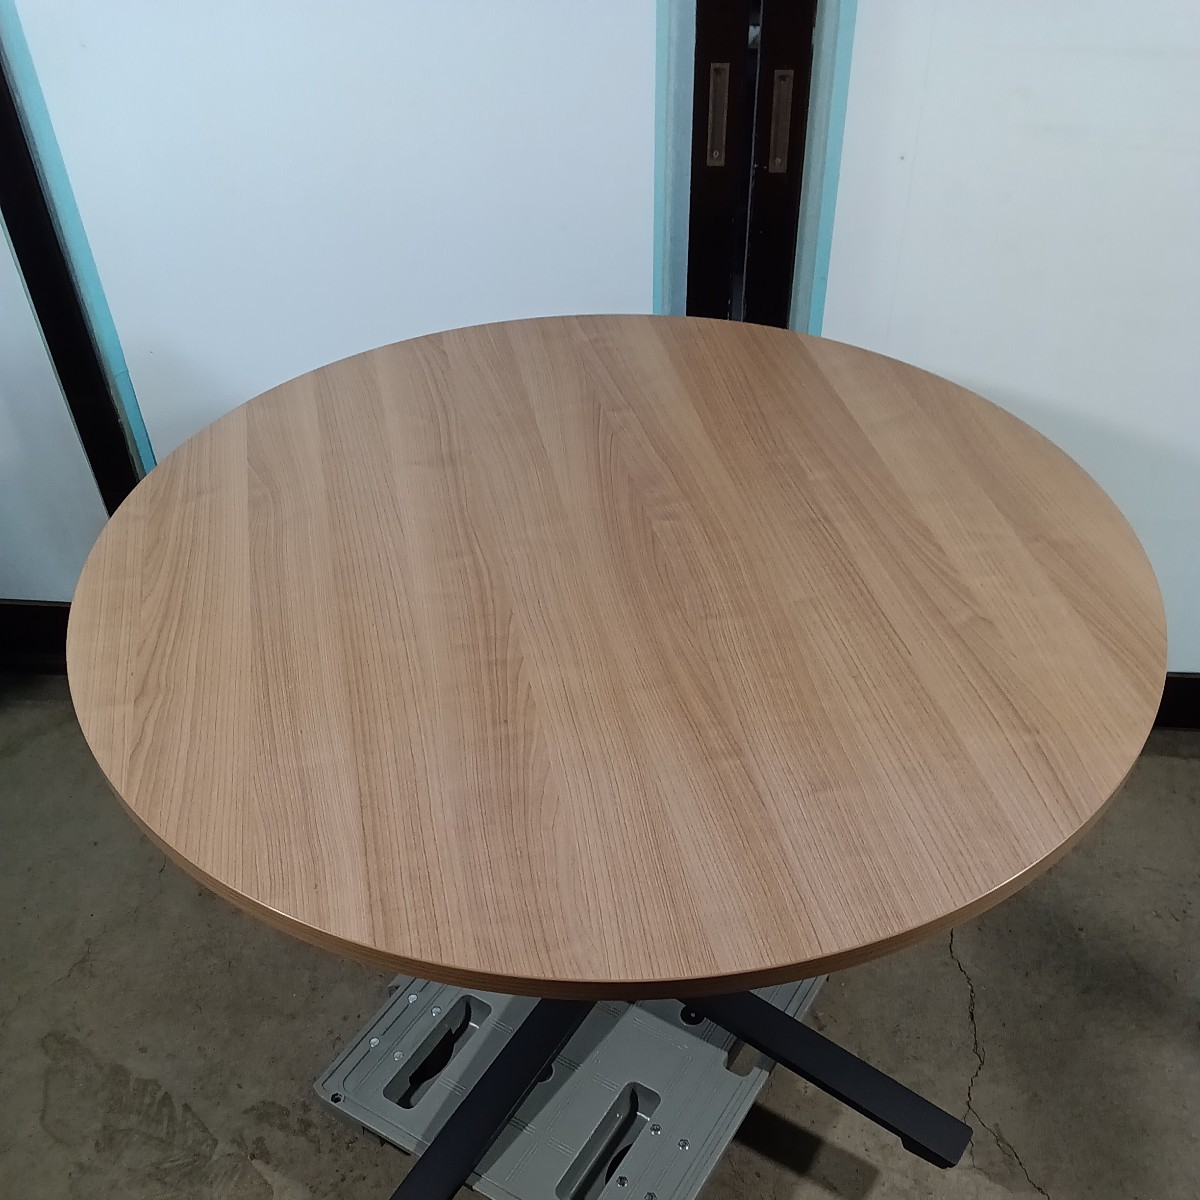  из дерева настольный круг стол φ1050h720kokyo2019 год производства ①mi-ting стол 